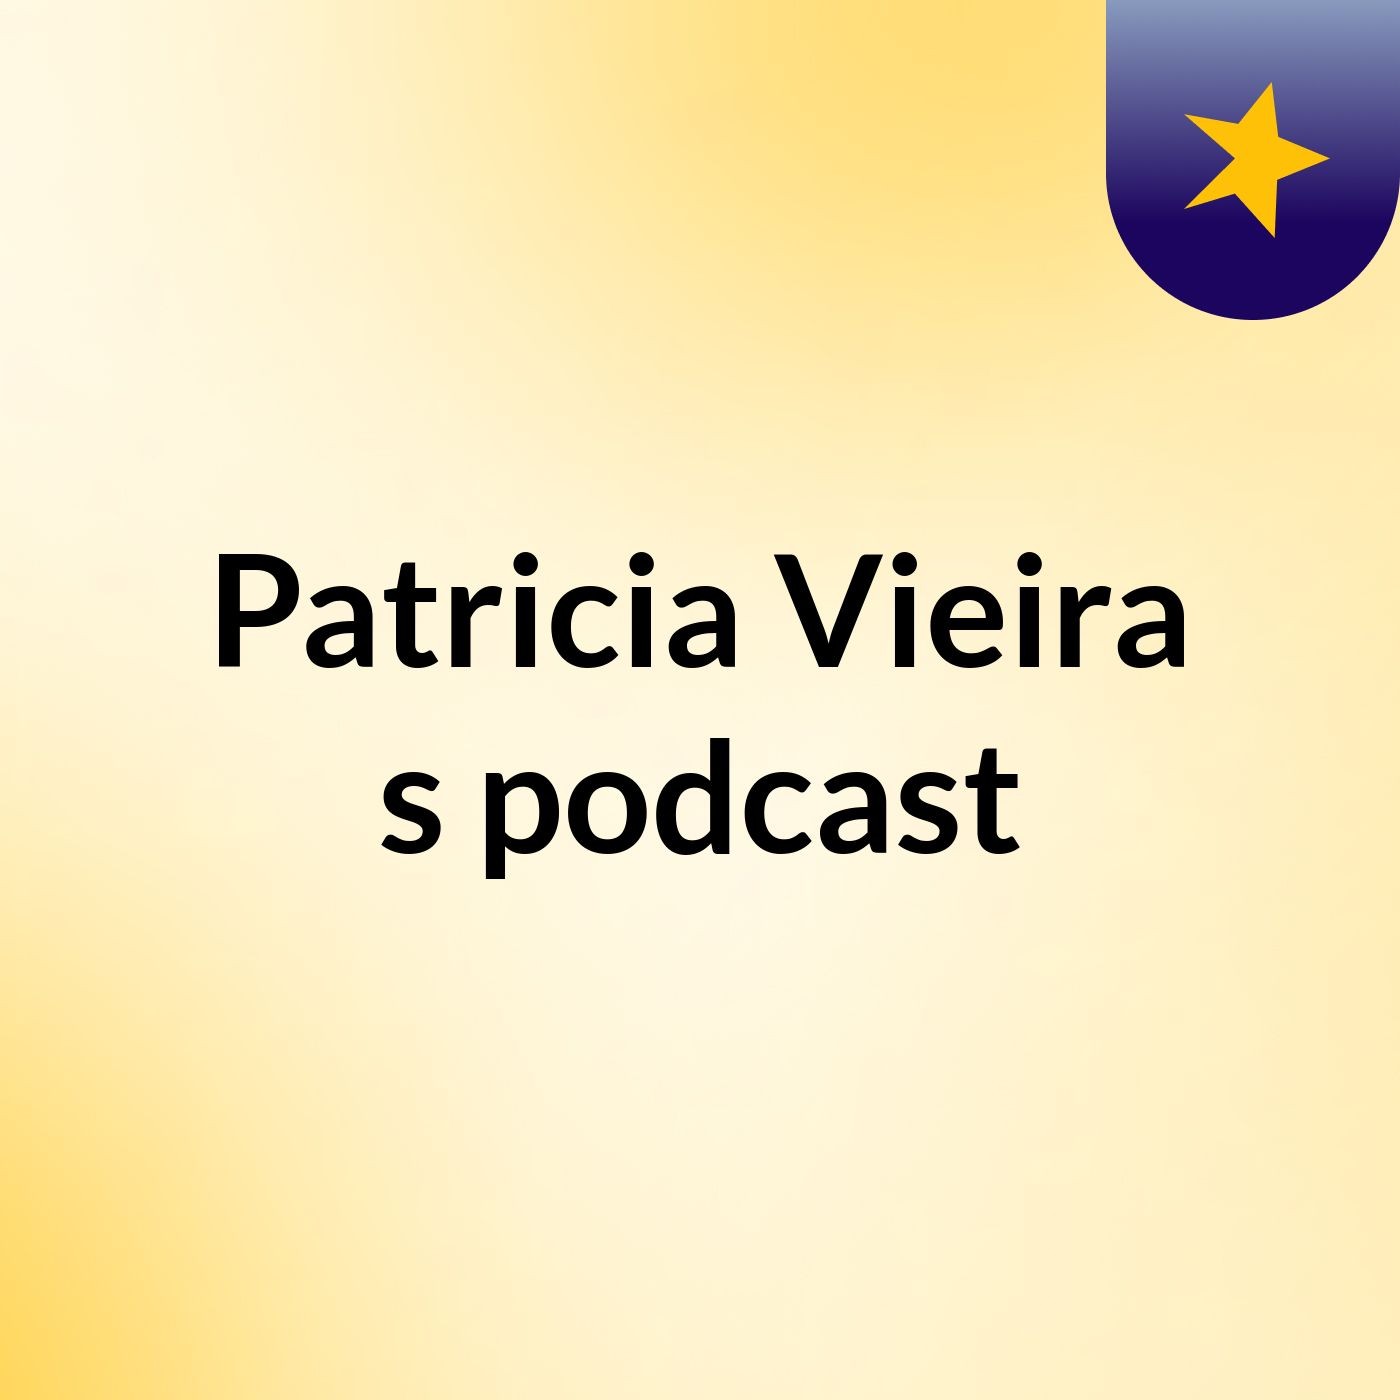 Patricia Vieira's podcast